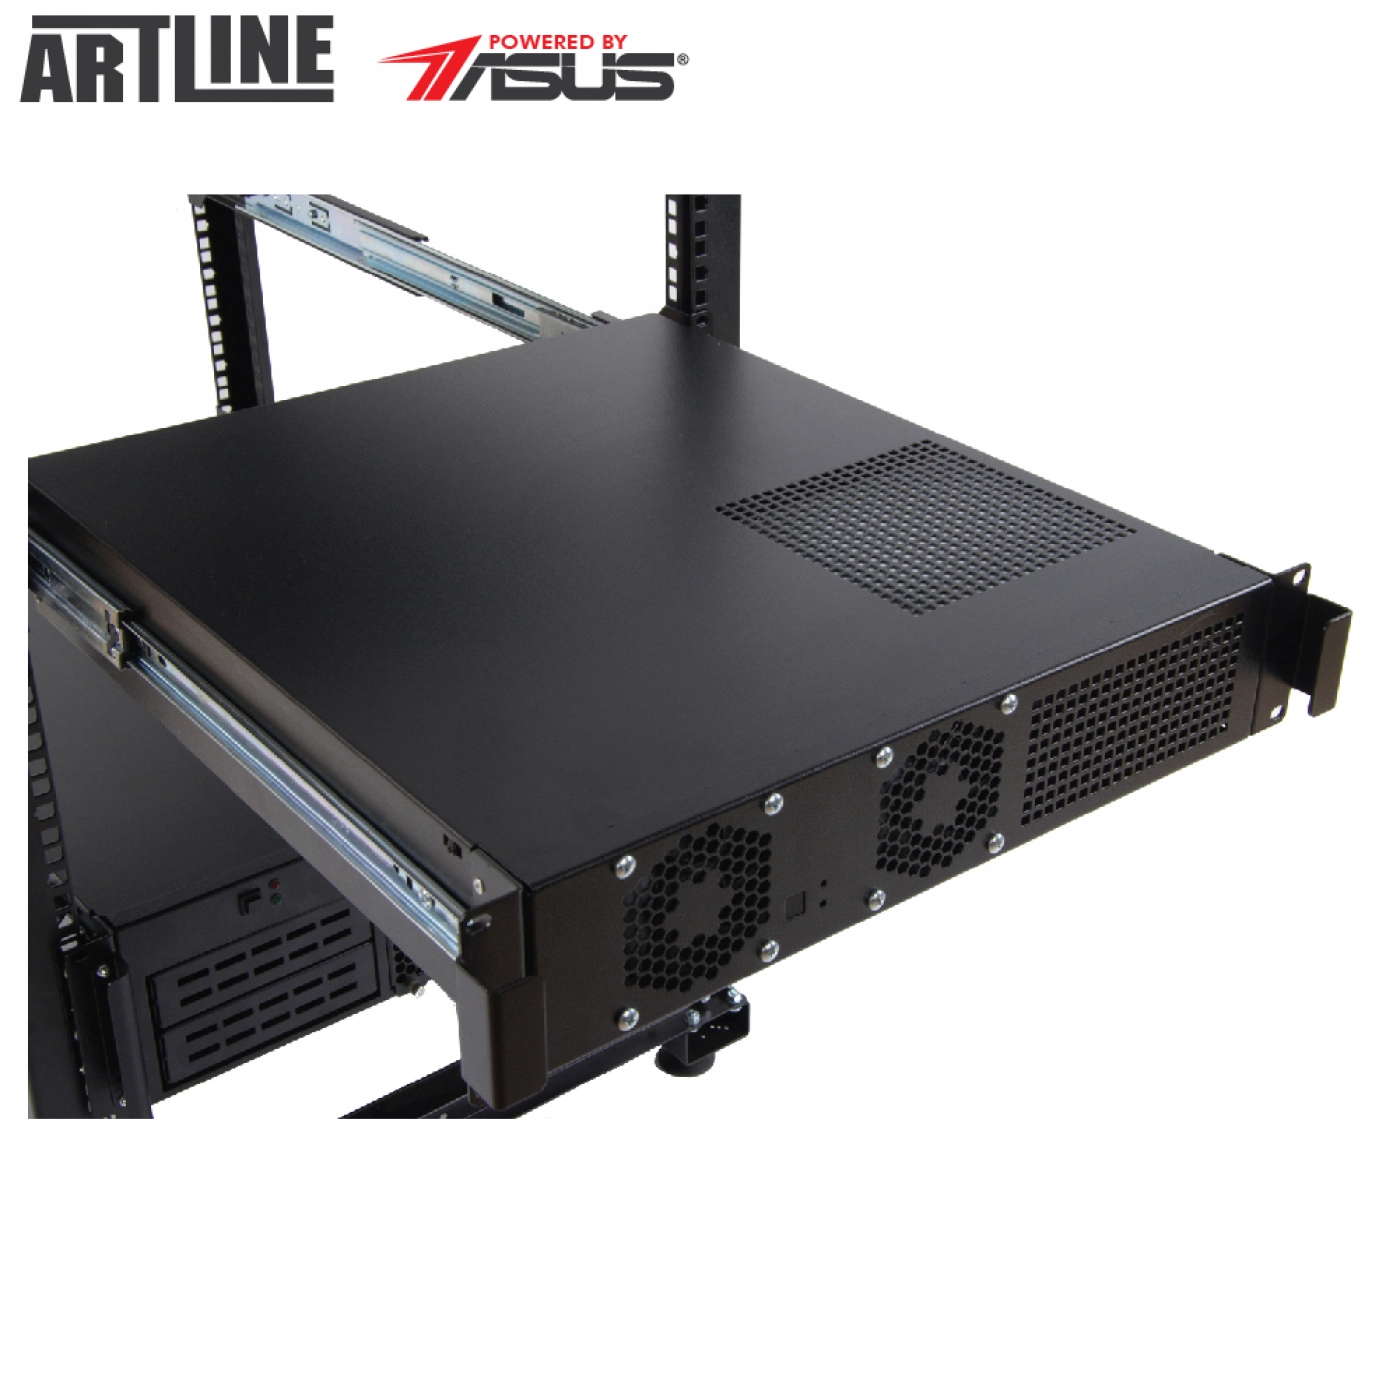 Купить Сервер ARTLINE Business R15v08 - фото 6